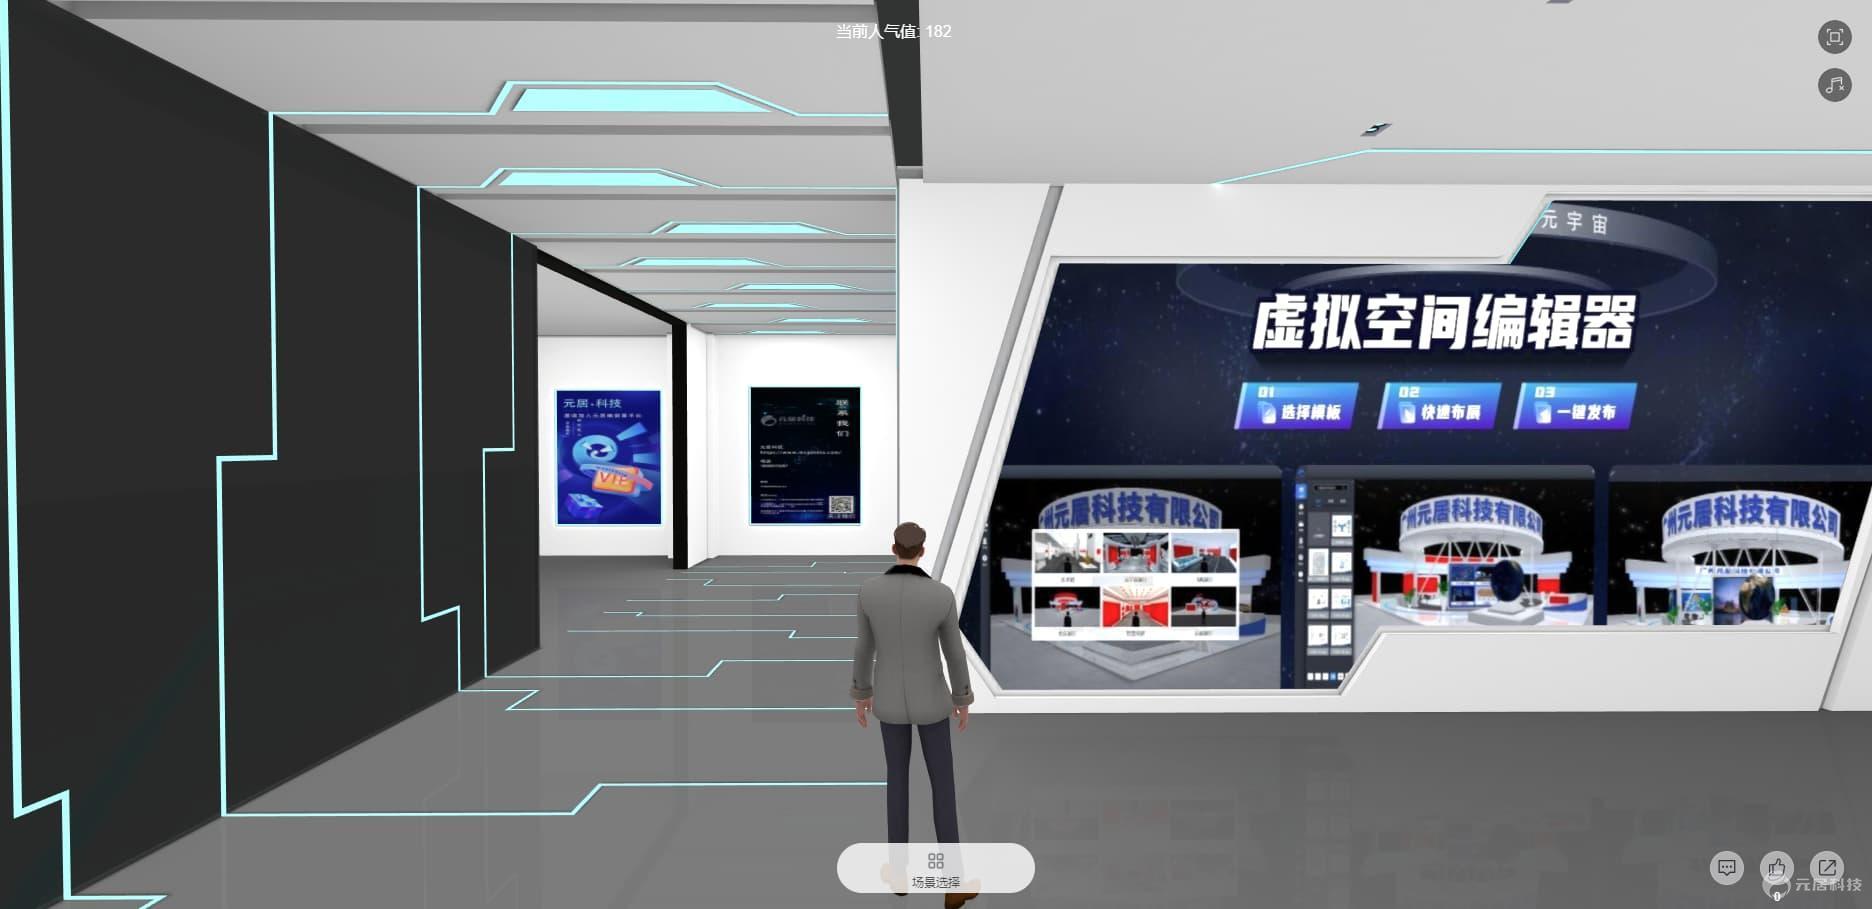 虚拟现实展厅技术